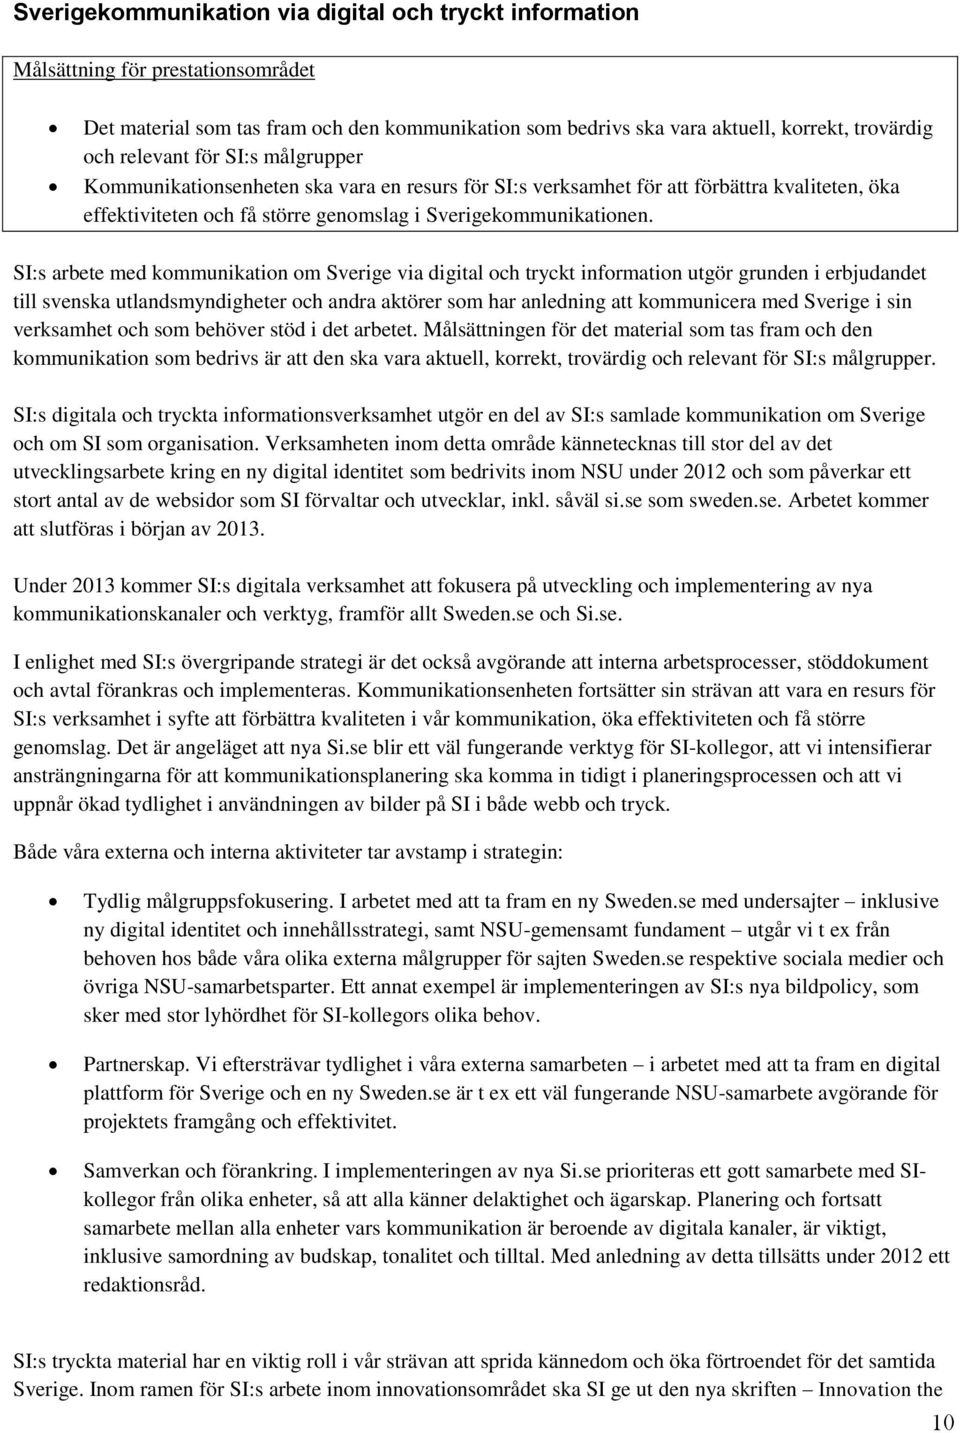 SI:s arbete med kommunikation om Sverige via digital och tryckt information utgör grunden i erbjudandet till svenska utlandsmyndigheter och andra aktörer som har anledning att kommunicera med Sverige